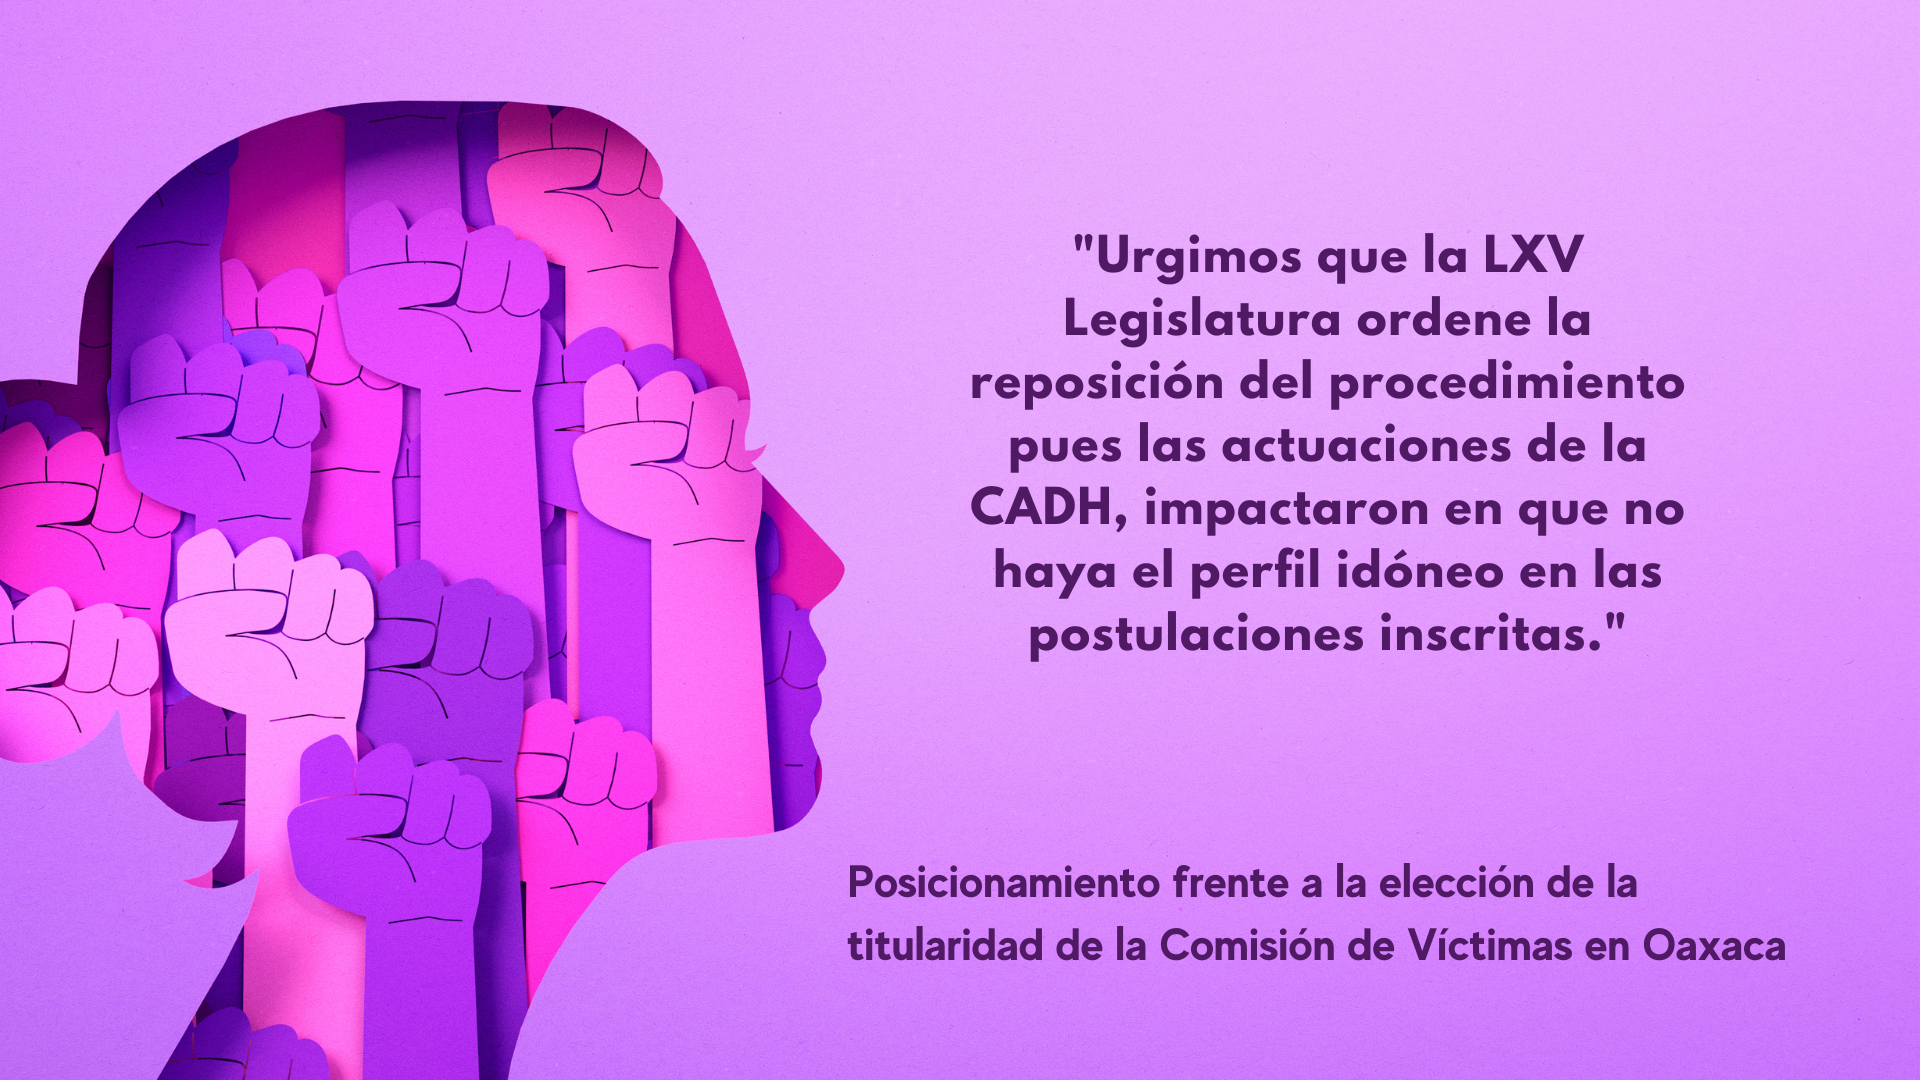 <strong>Posicionamiento frente a la elección de la titularidad de la Comisión de Víctimas en Oaxaca</strong>